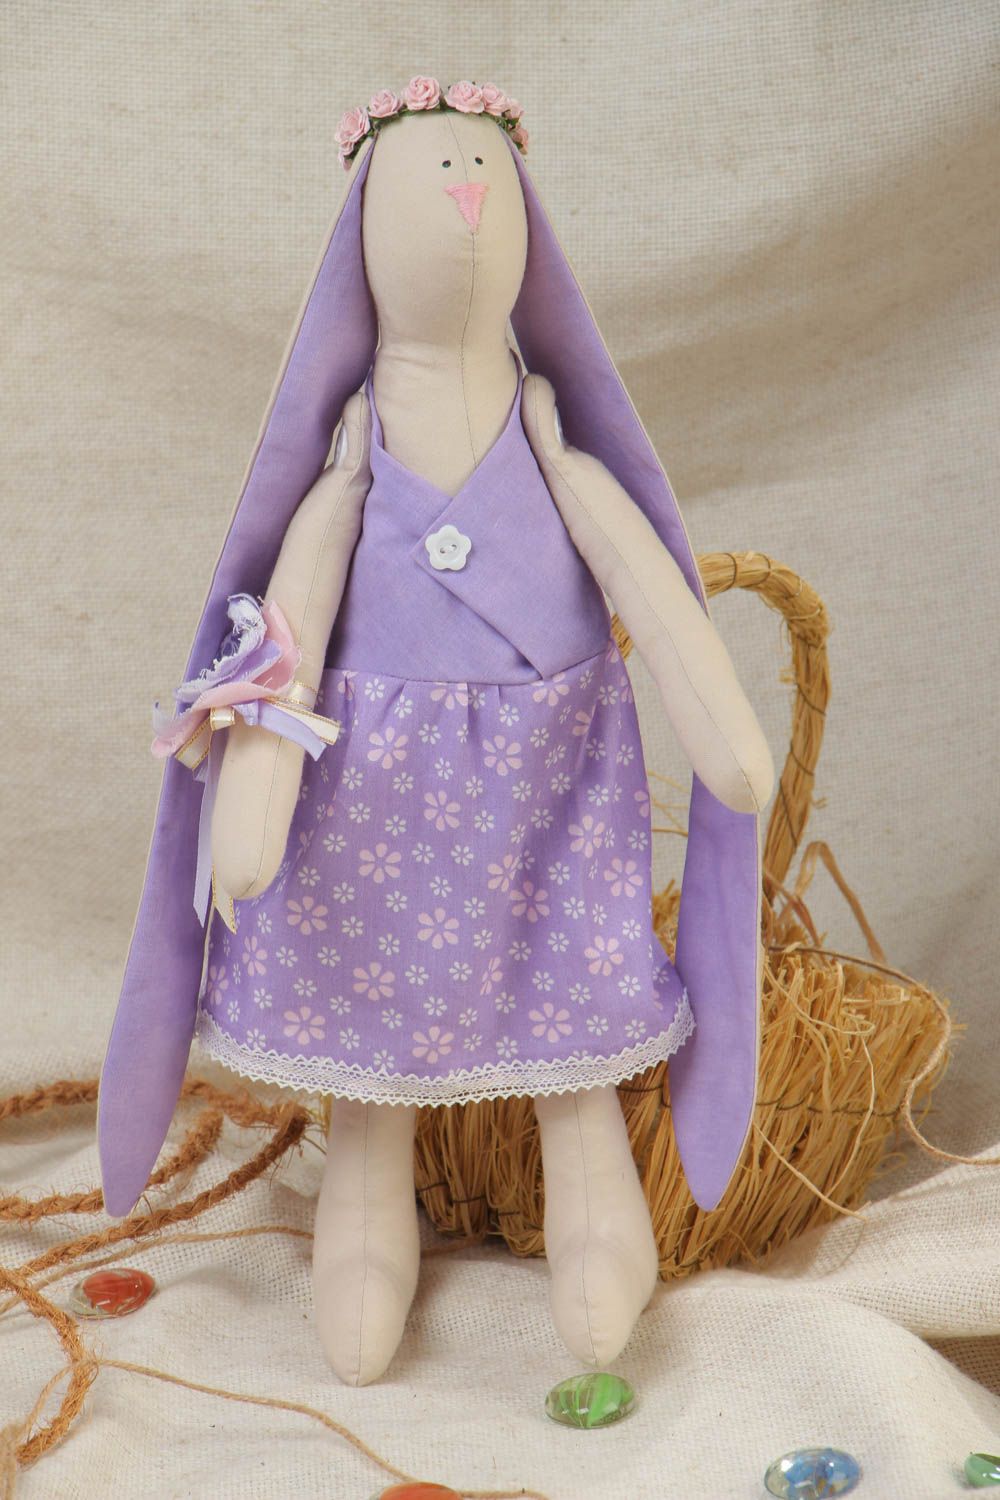 Мягкая кукла ручной работы из хлопка в виде зайца с длинными ушами в каркасом фото 1